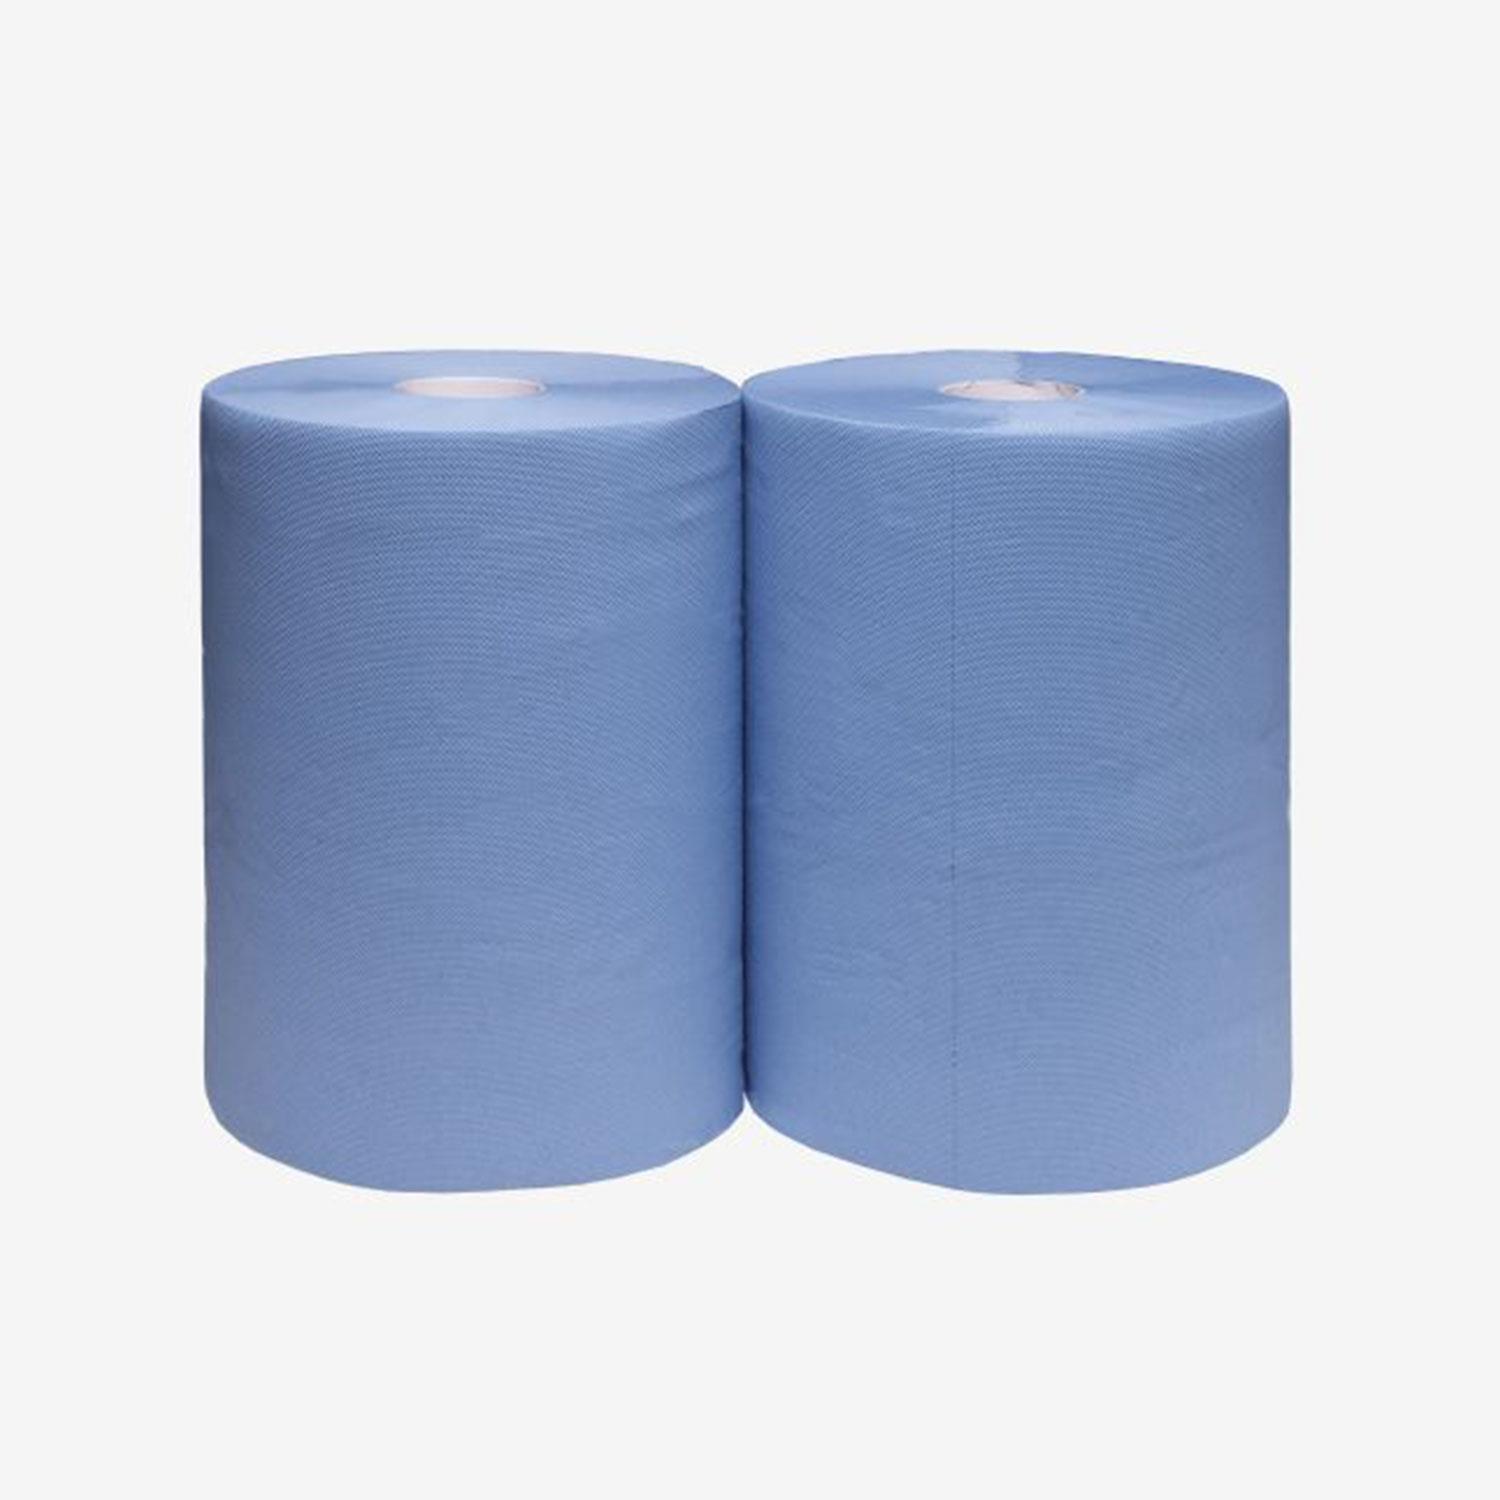 Putzpapier blau 3-lagig ca. 38 x 36cm 1 Pack - 2 Rollen